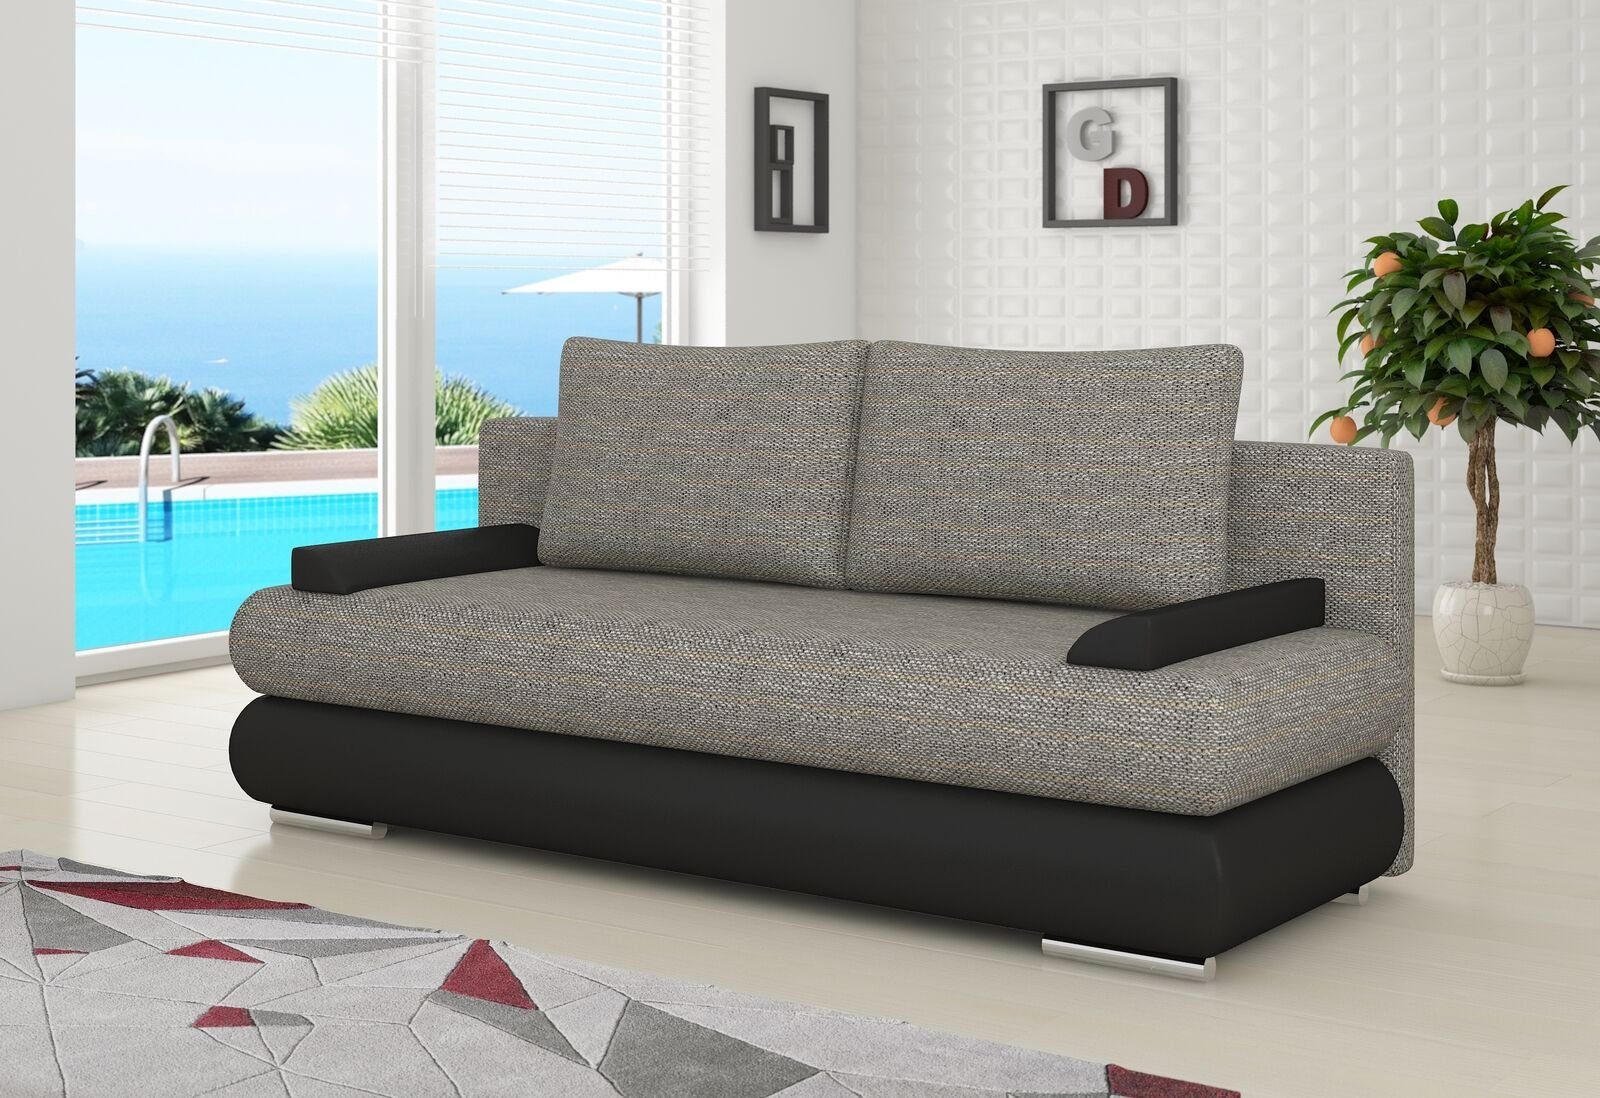 JVmoebel Sofa, Design Schlafsofa Couch Polster 3 Sitzer Stoff Couch Gästezimmer Hellgrau / Schwarz